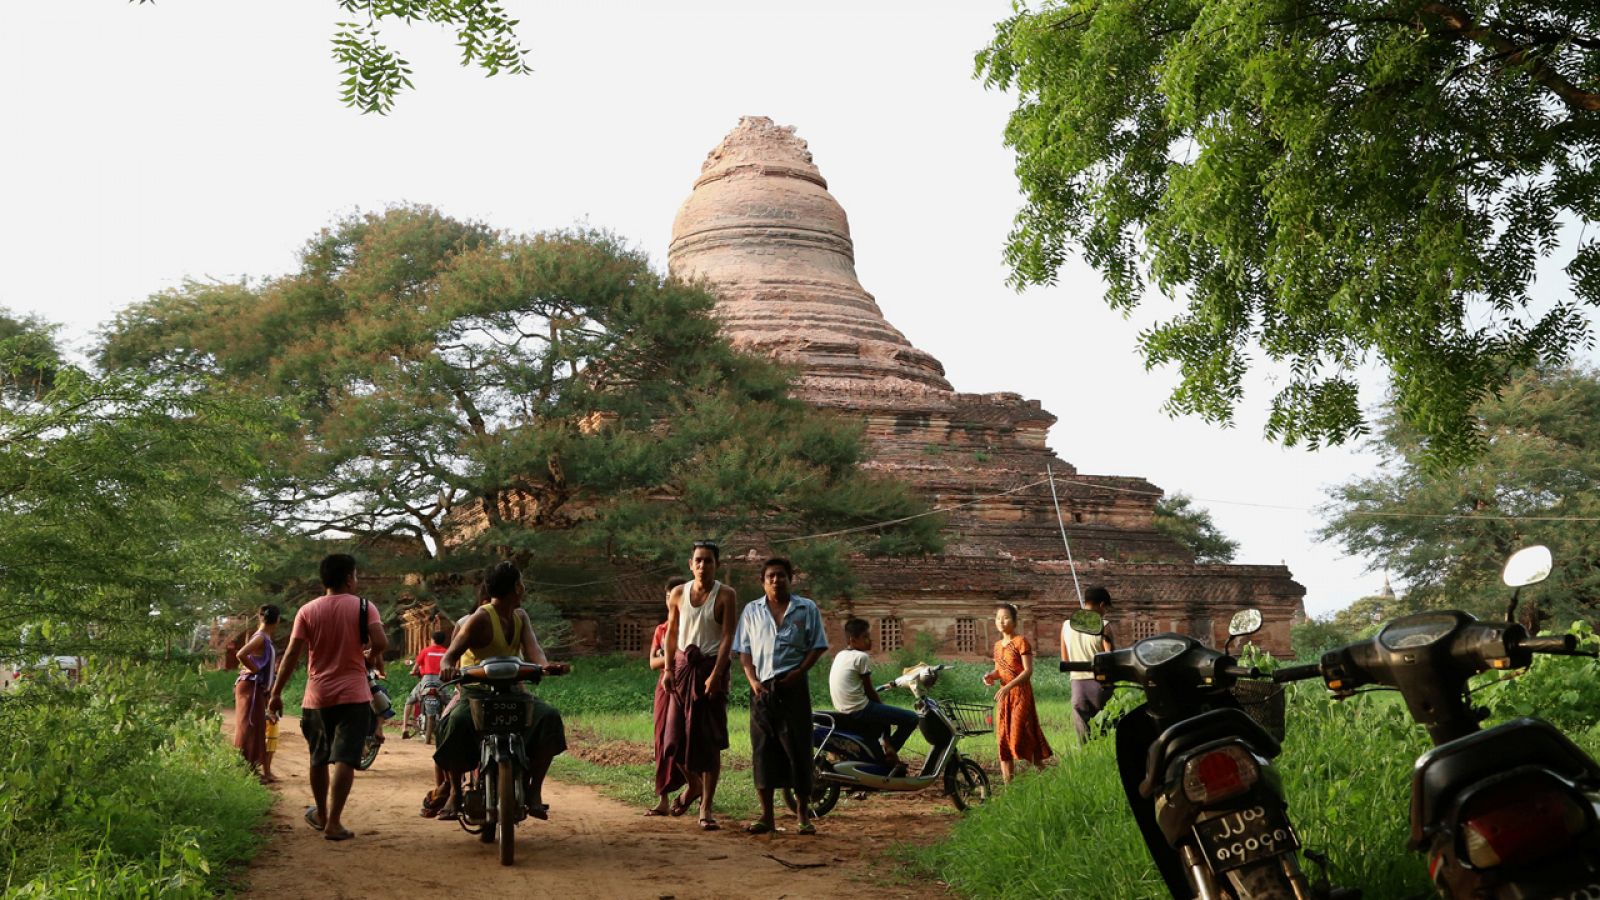 Una pagoda dañada en Bagan, Birmania, a consecuencia del terremoto registrado el miércoles